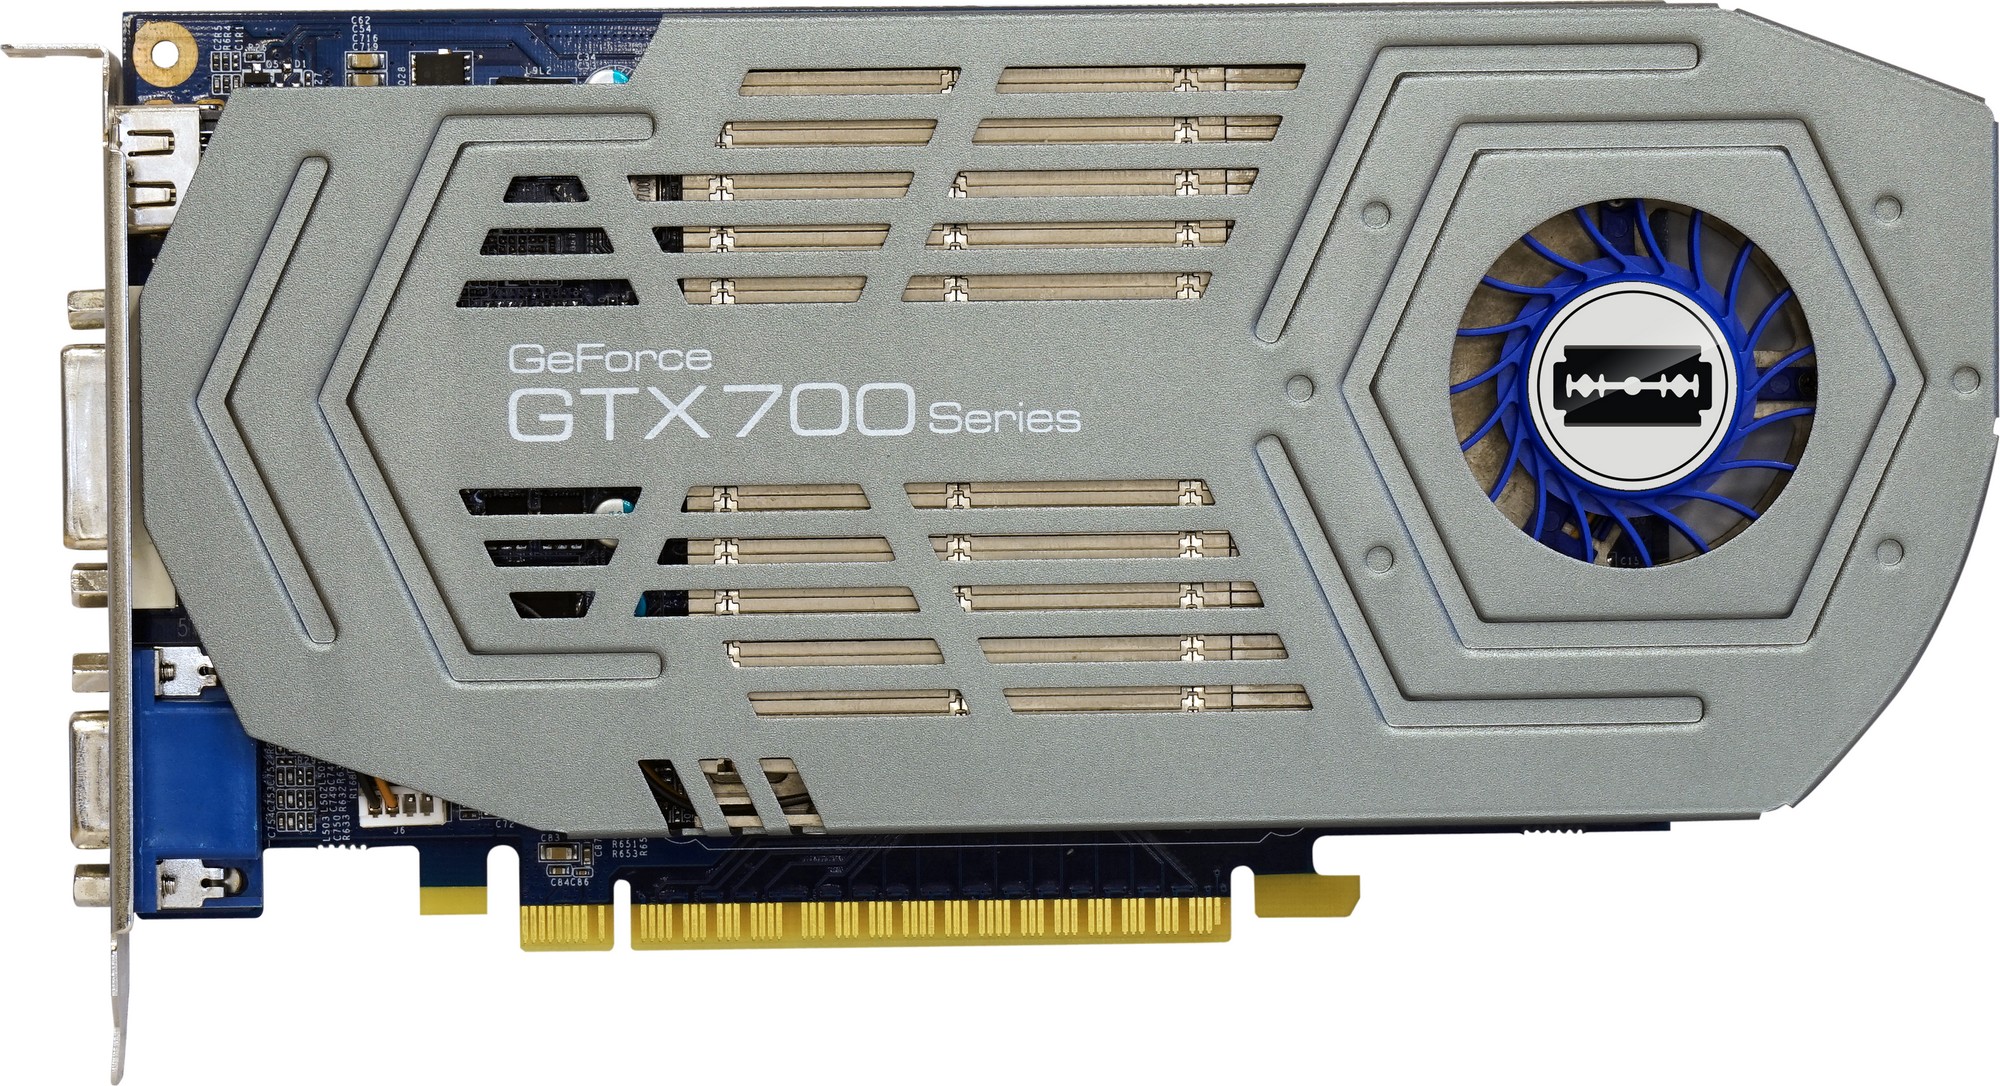 GF-GTX750Ti-E2GHD/1ST | NVIDIA GEFORCE GTX750Ti搭載 PCI-Express ...